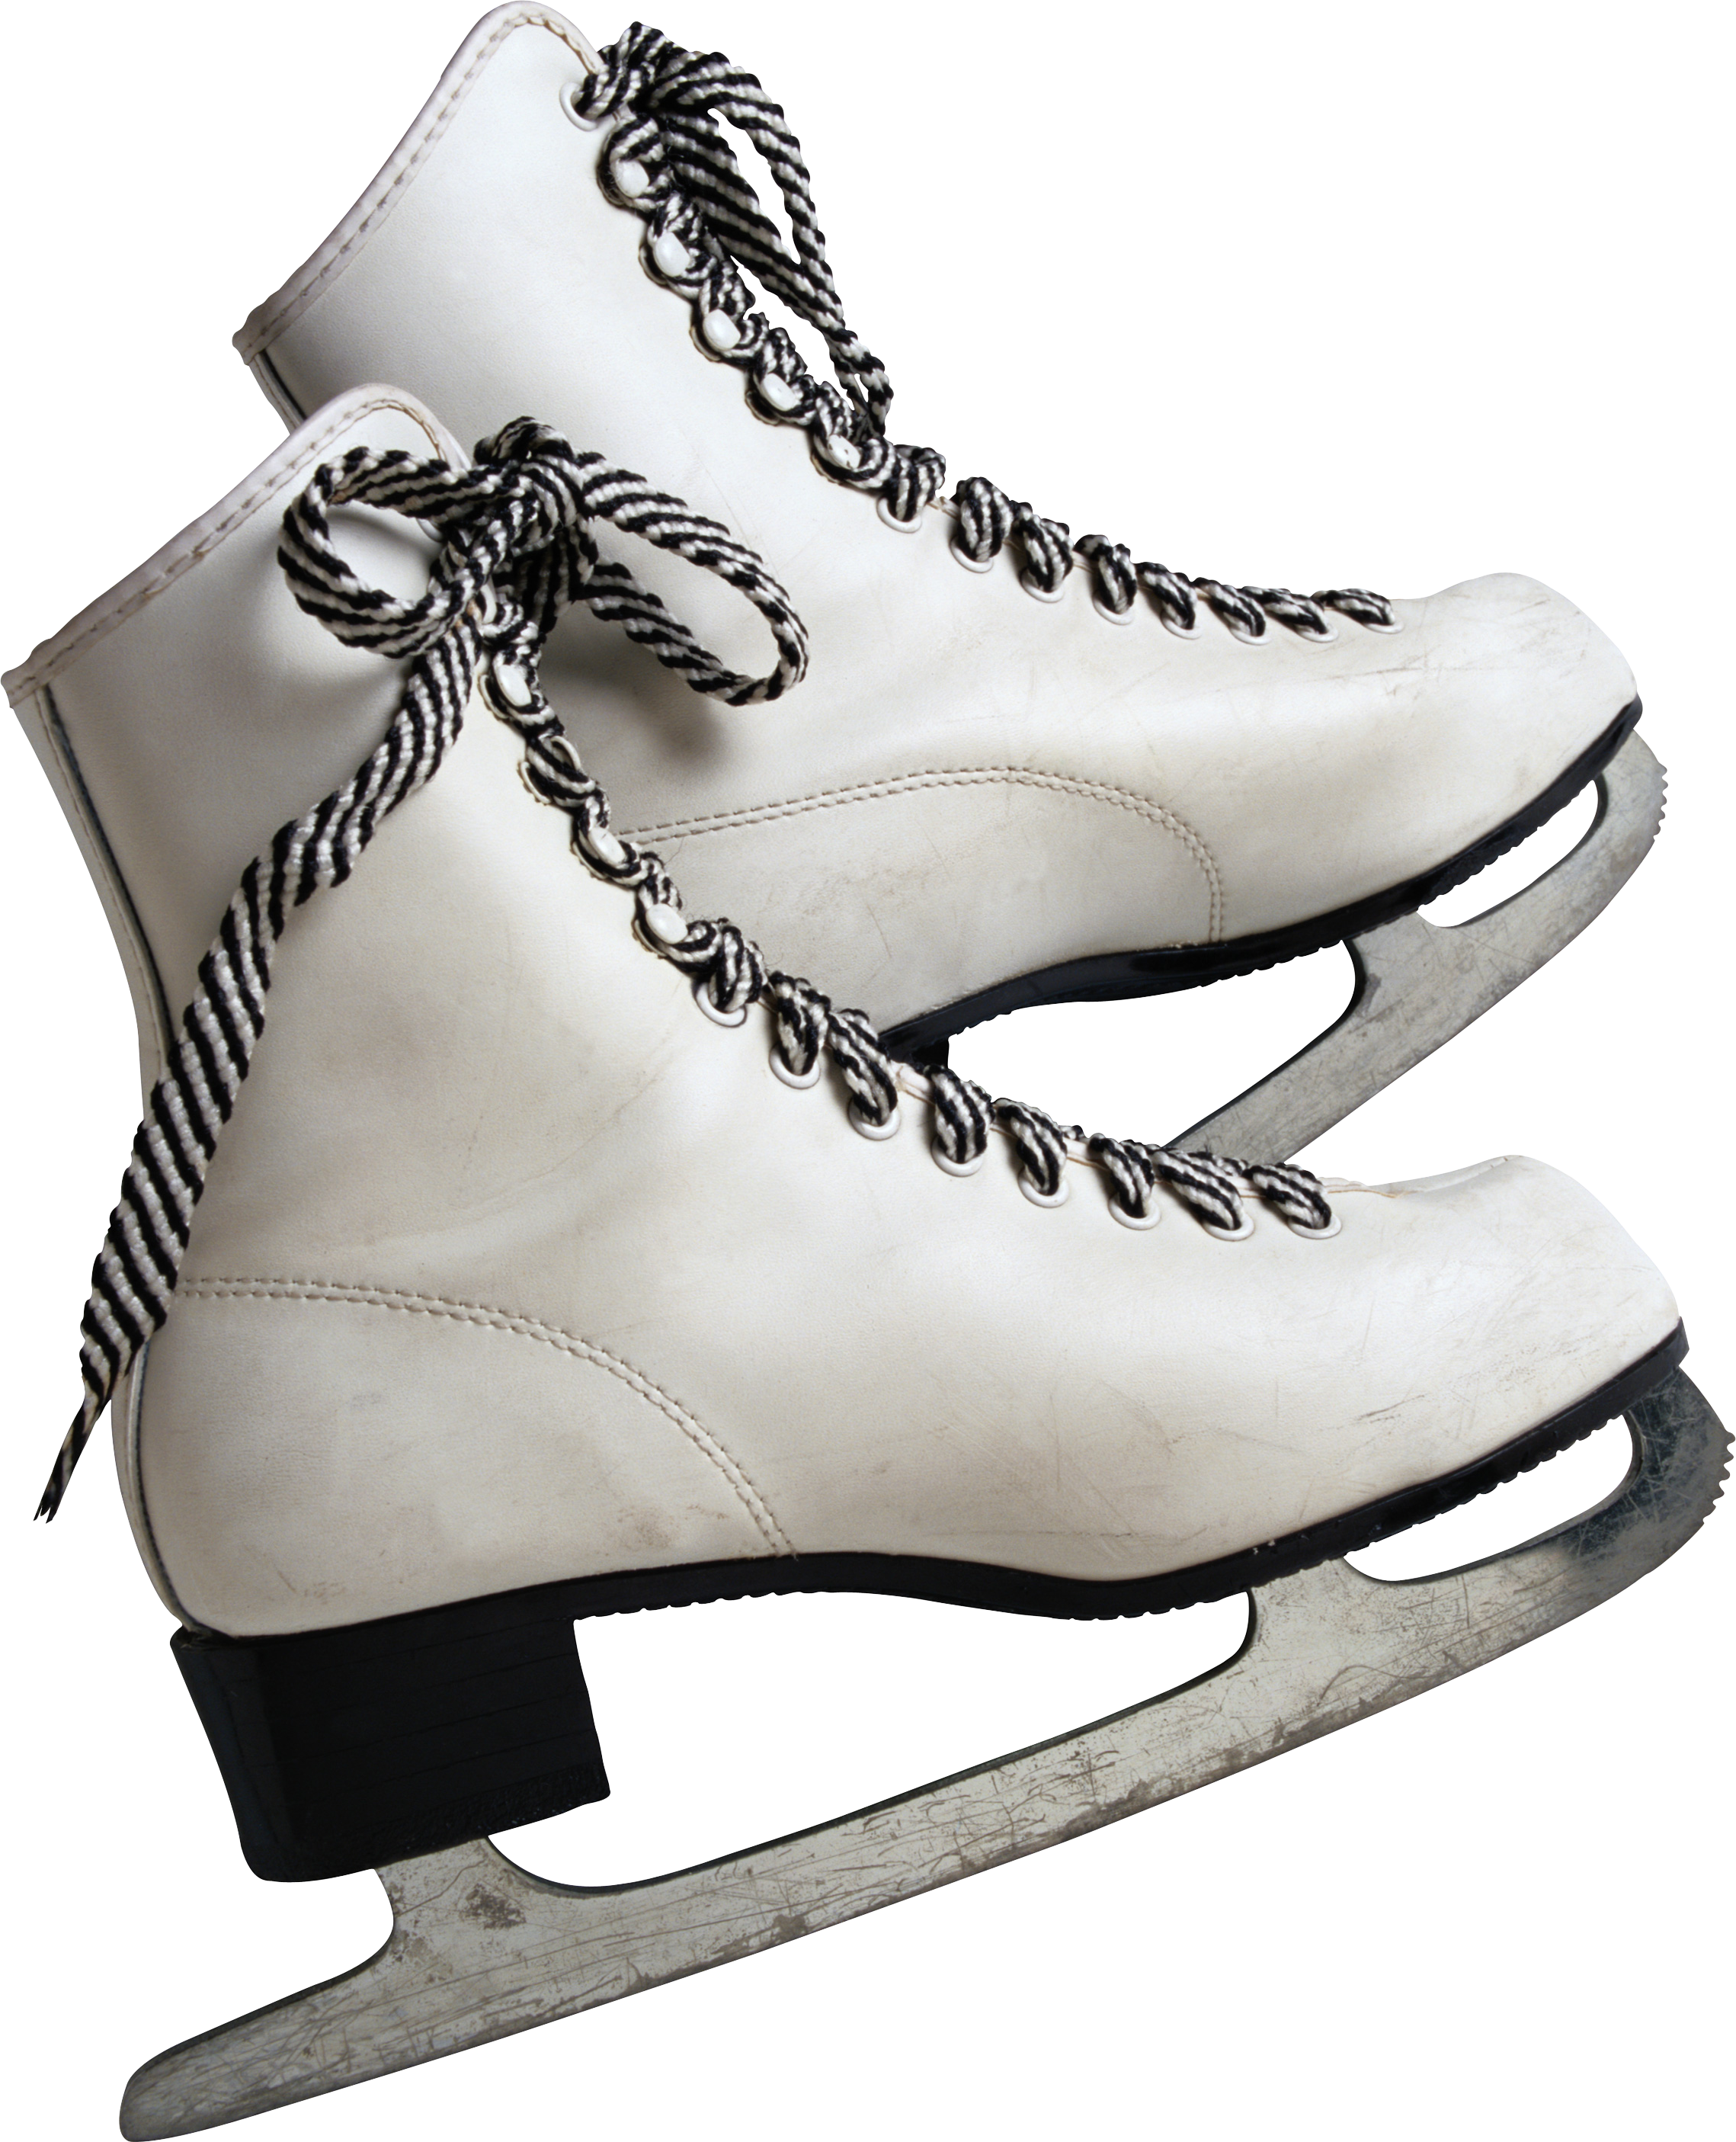 स्केट जूते, स्केटिंग ब्लेड